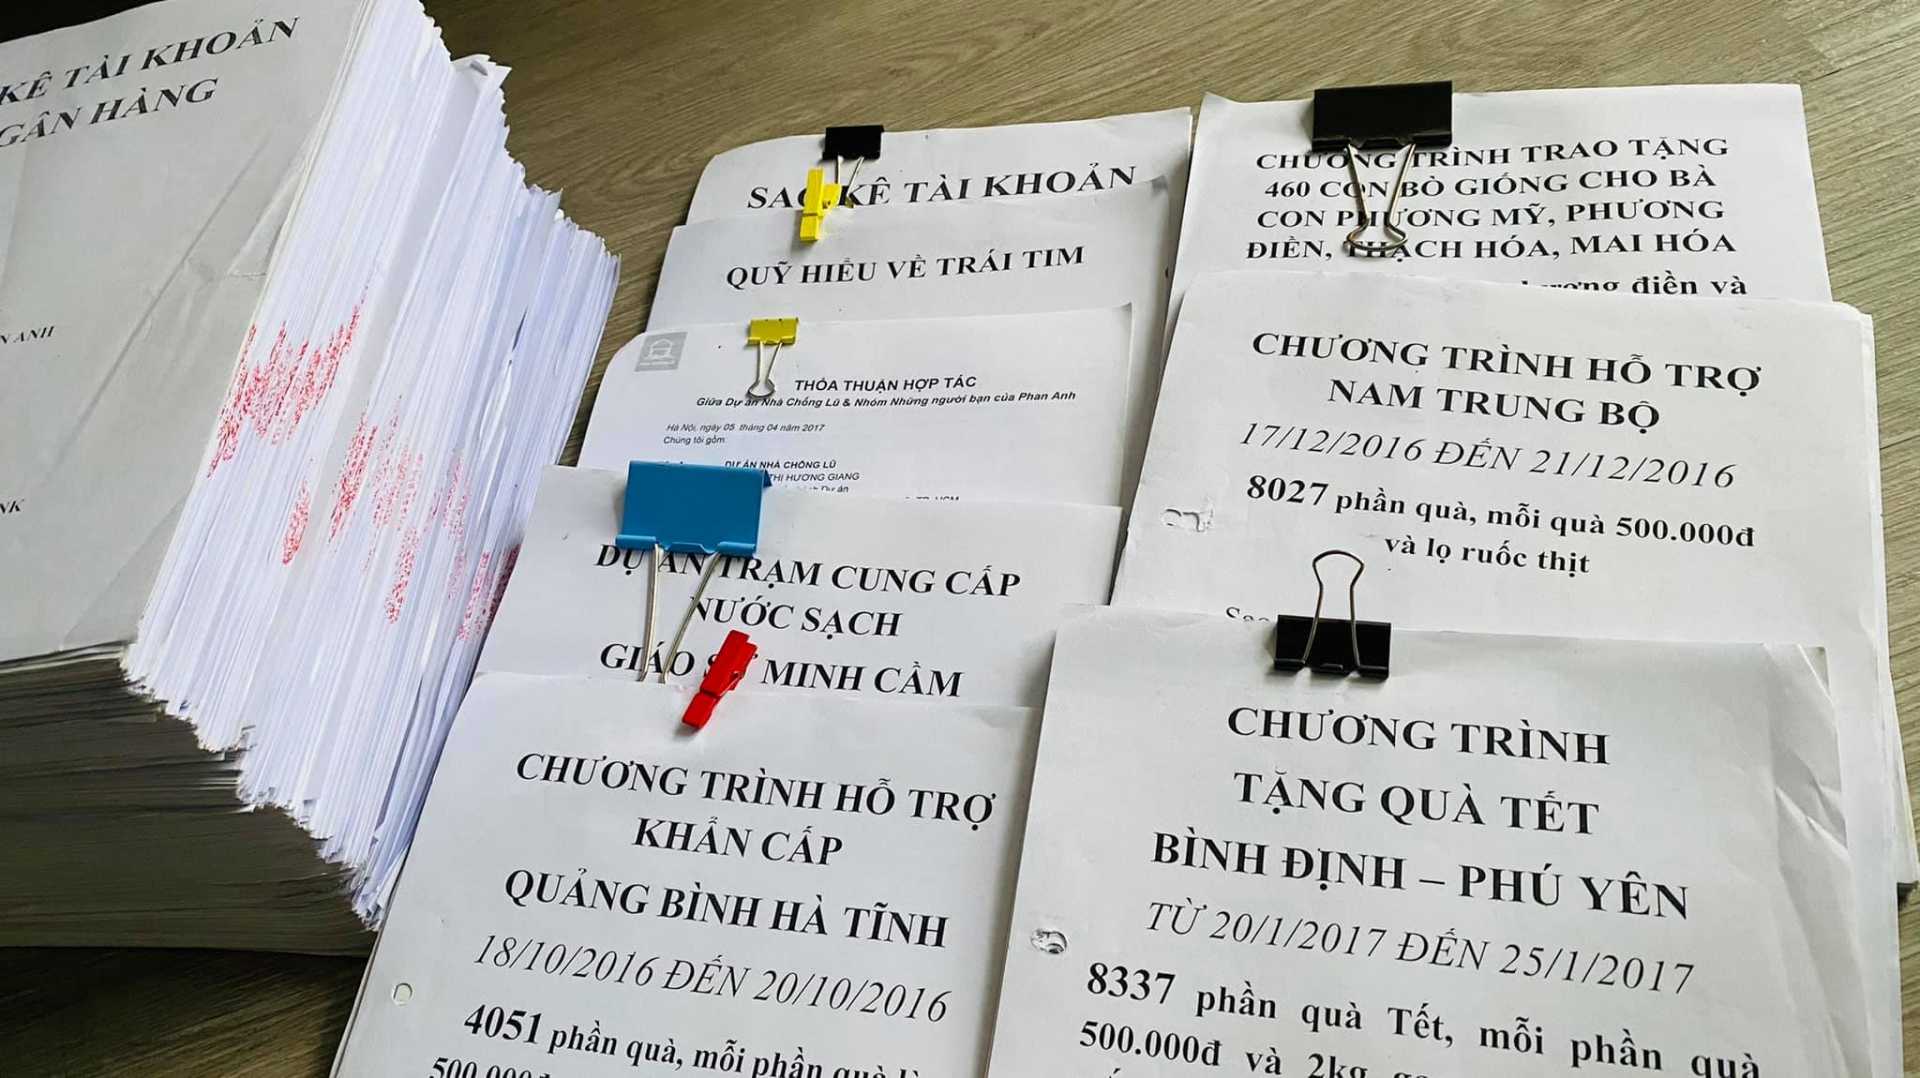 MC Phan Anh bất ngờ tung hơn 6kg giấy sao kê 24 tỷ từ thiện 5 năm trước - Ảnh 2